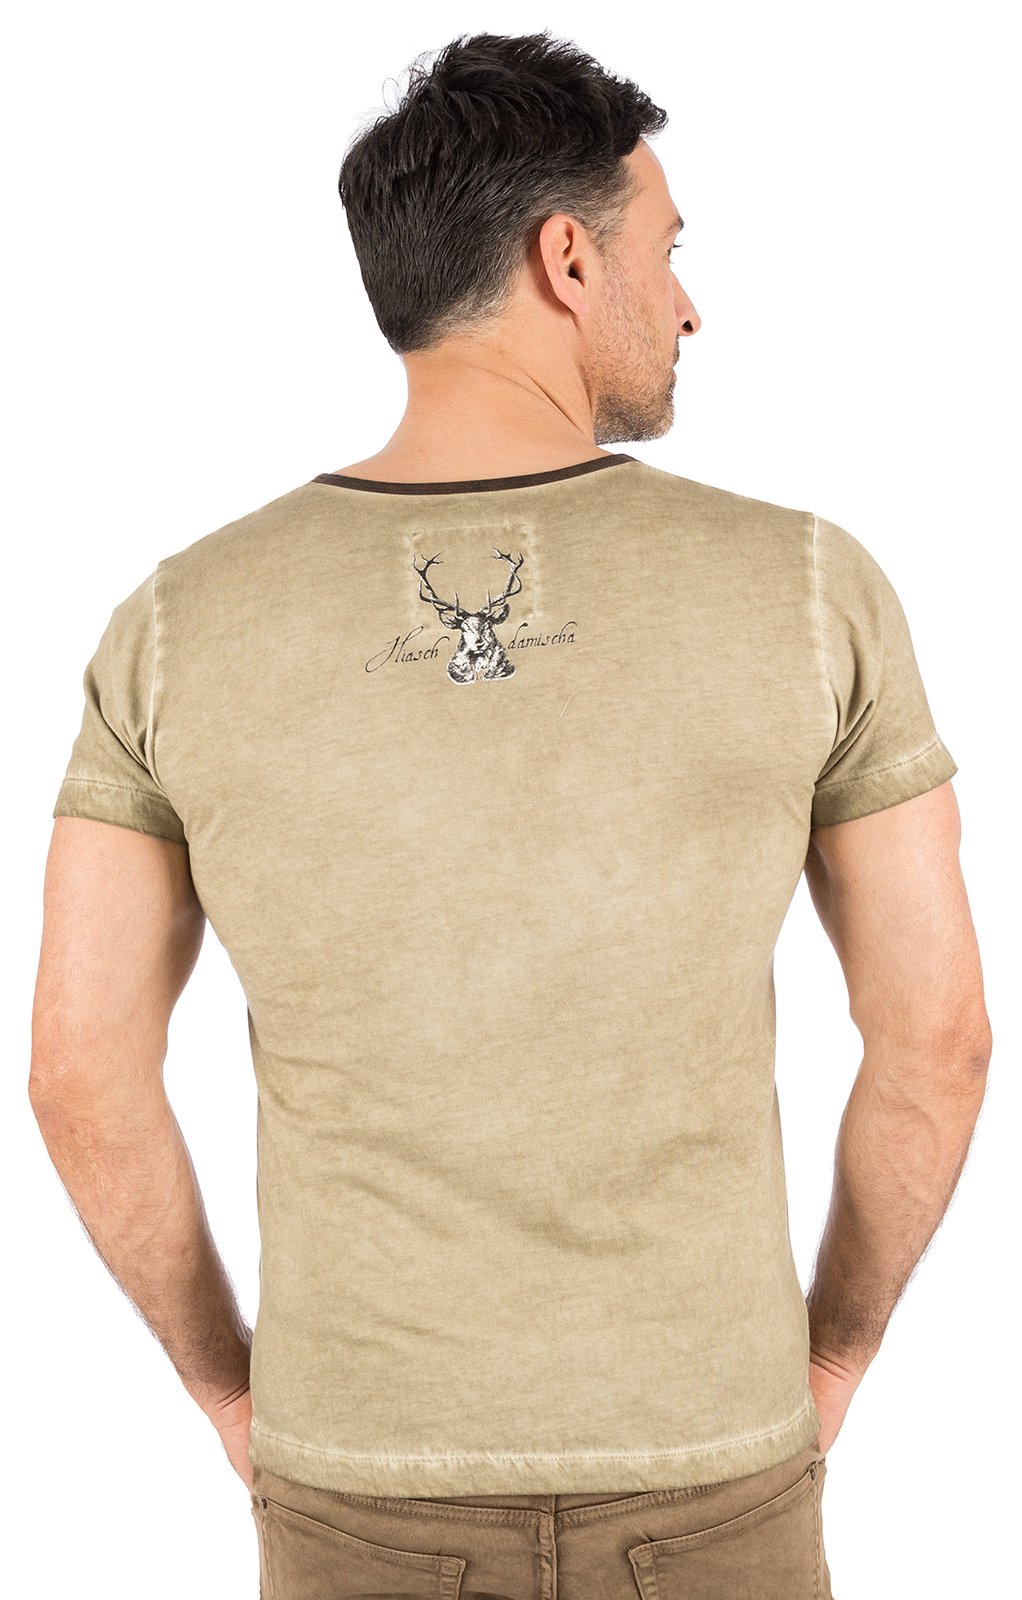 weitere Bilder von Trachten T-Shirt E45 - FABIAN BAVARIA taupe